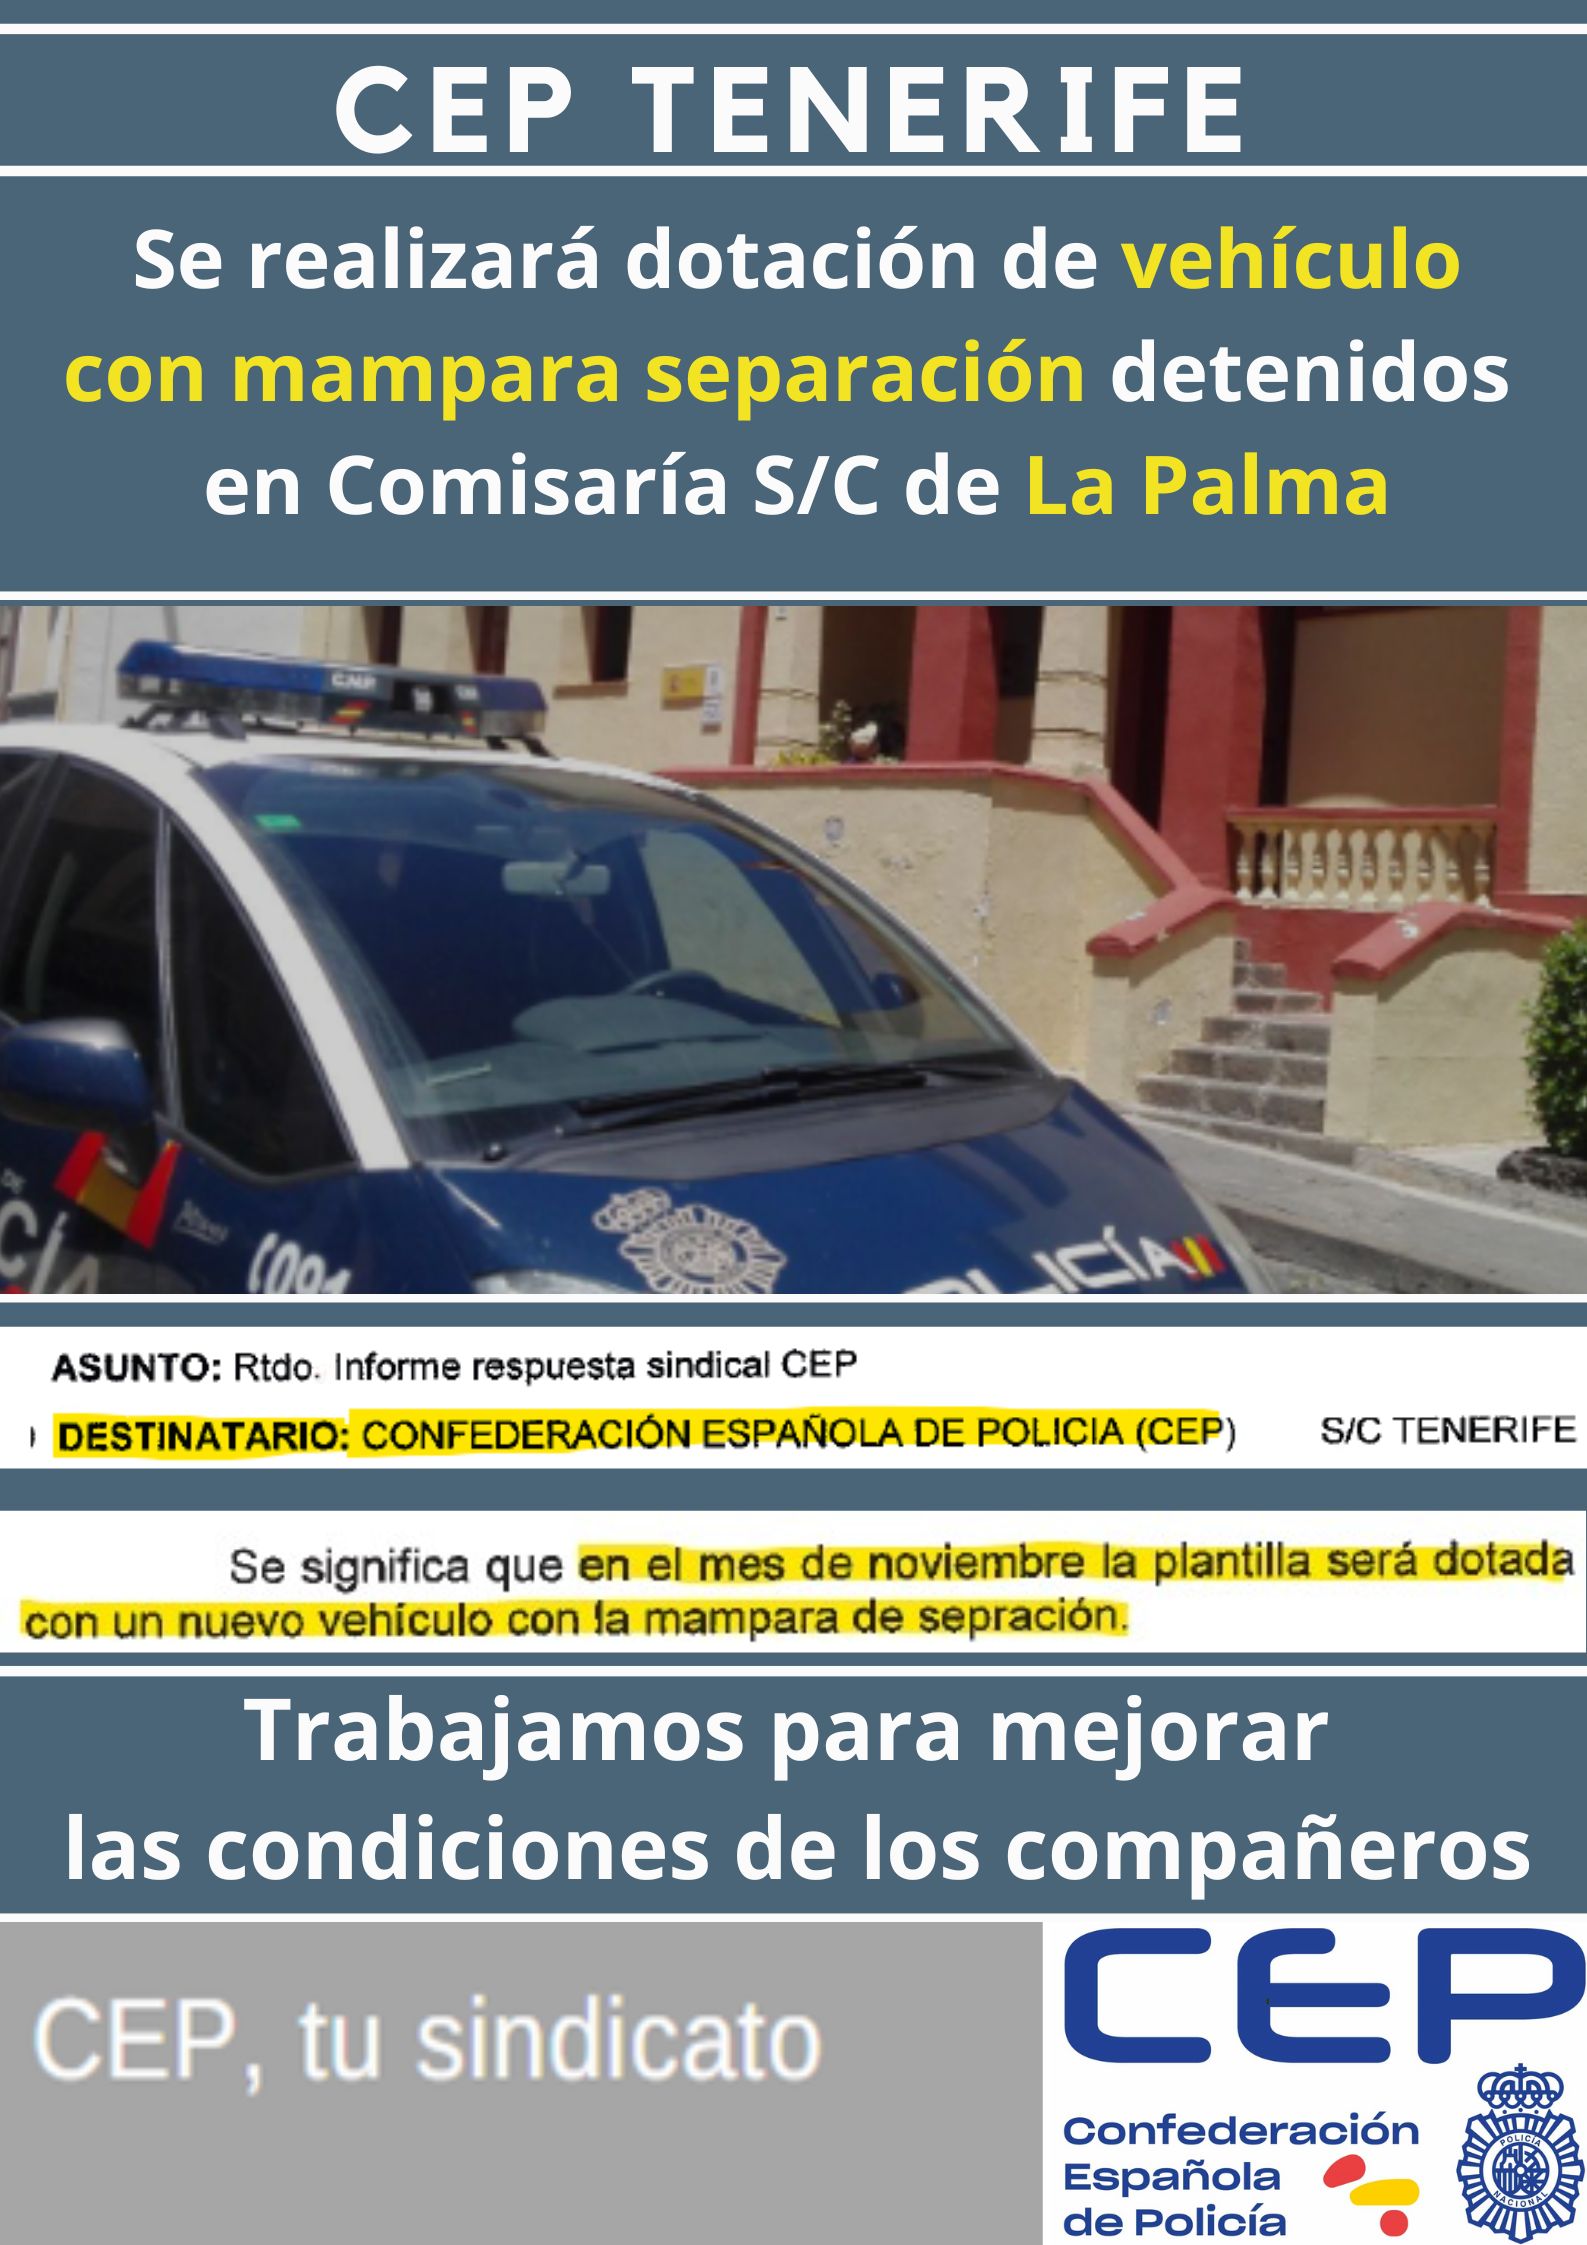 Tras petición CEP, se realizará dotación vehículo con mampara separación detenidos en La Palma